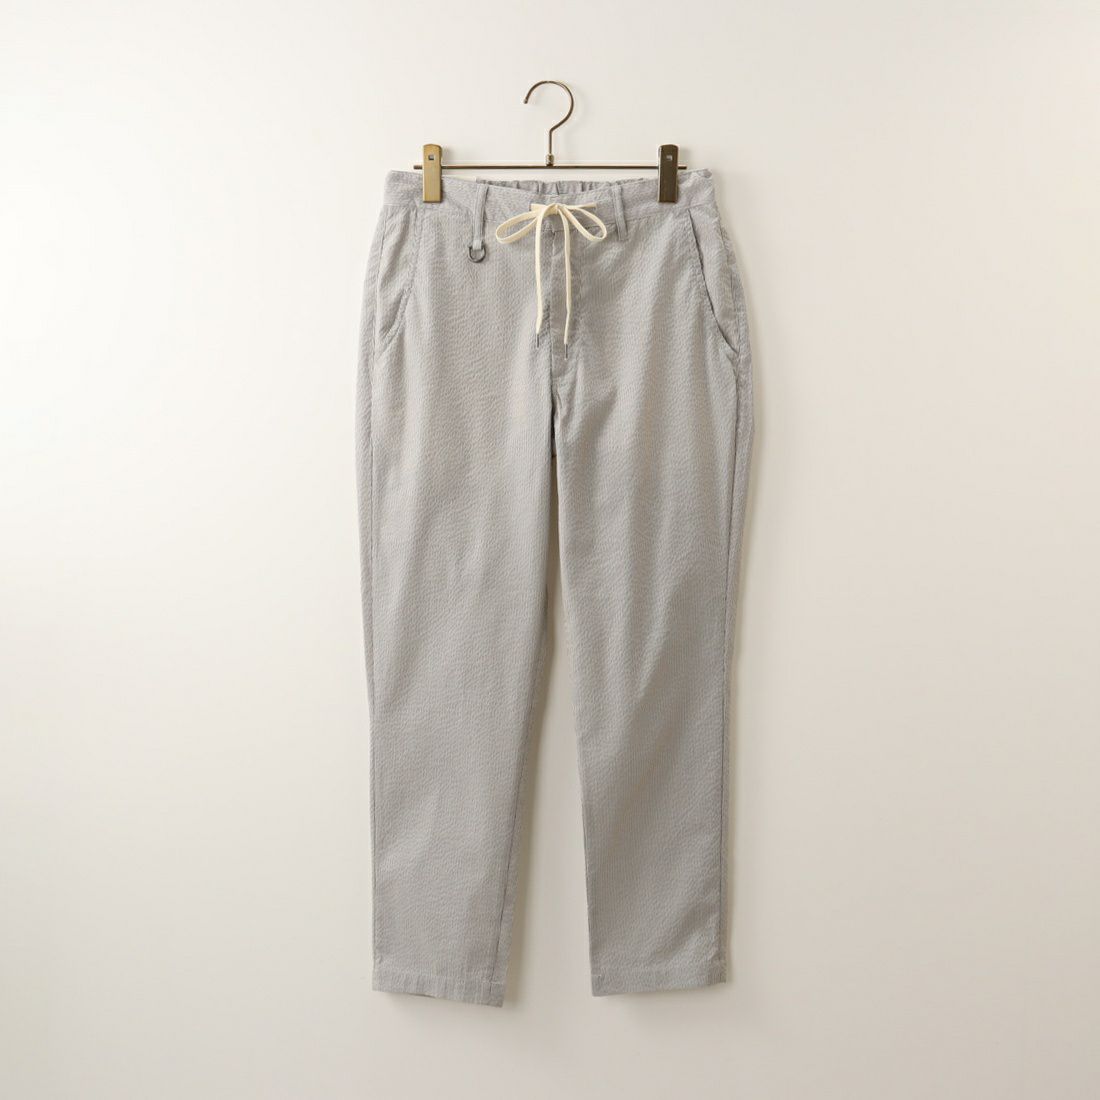 Jeans Factory Clothes [ジーンズファクトリークローズ] COOLMAX サッカーリラックスアンクルトラウザー [JFC-232-032] 67 BEG